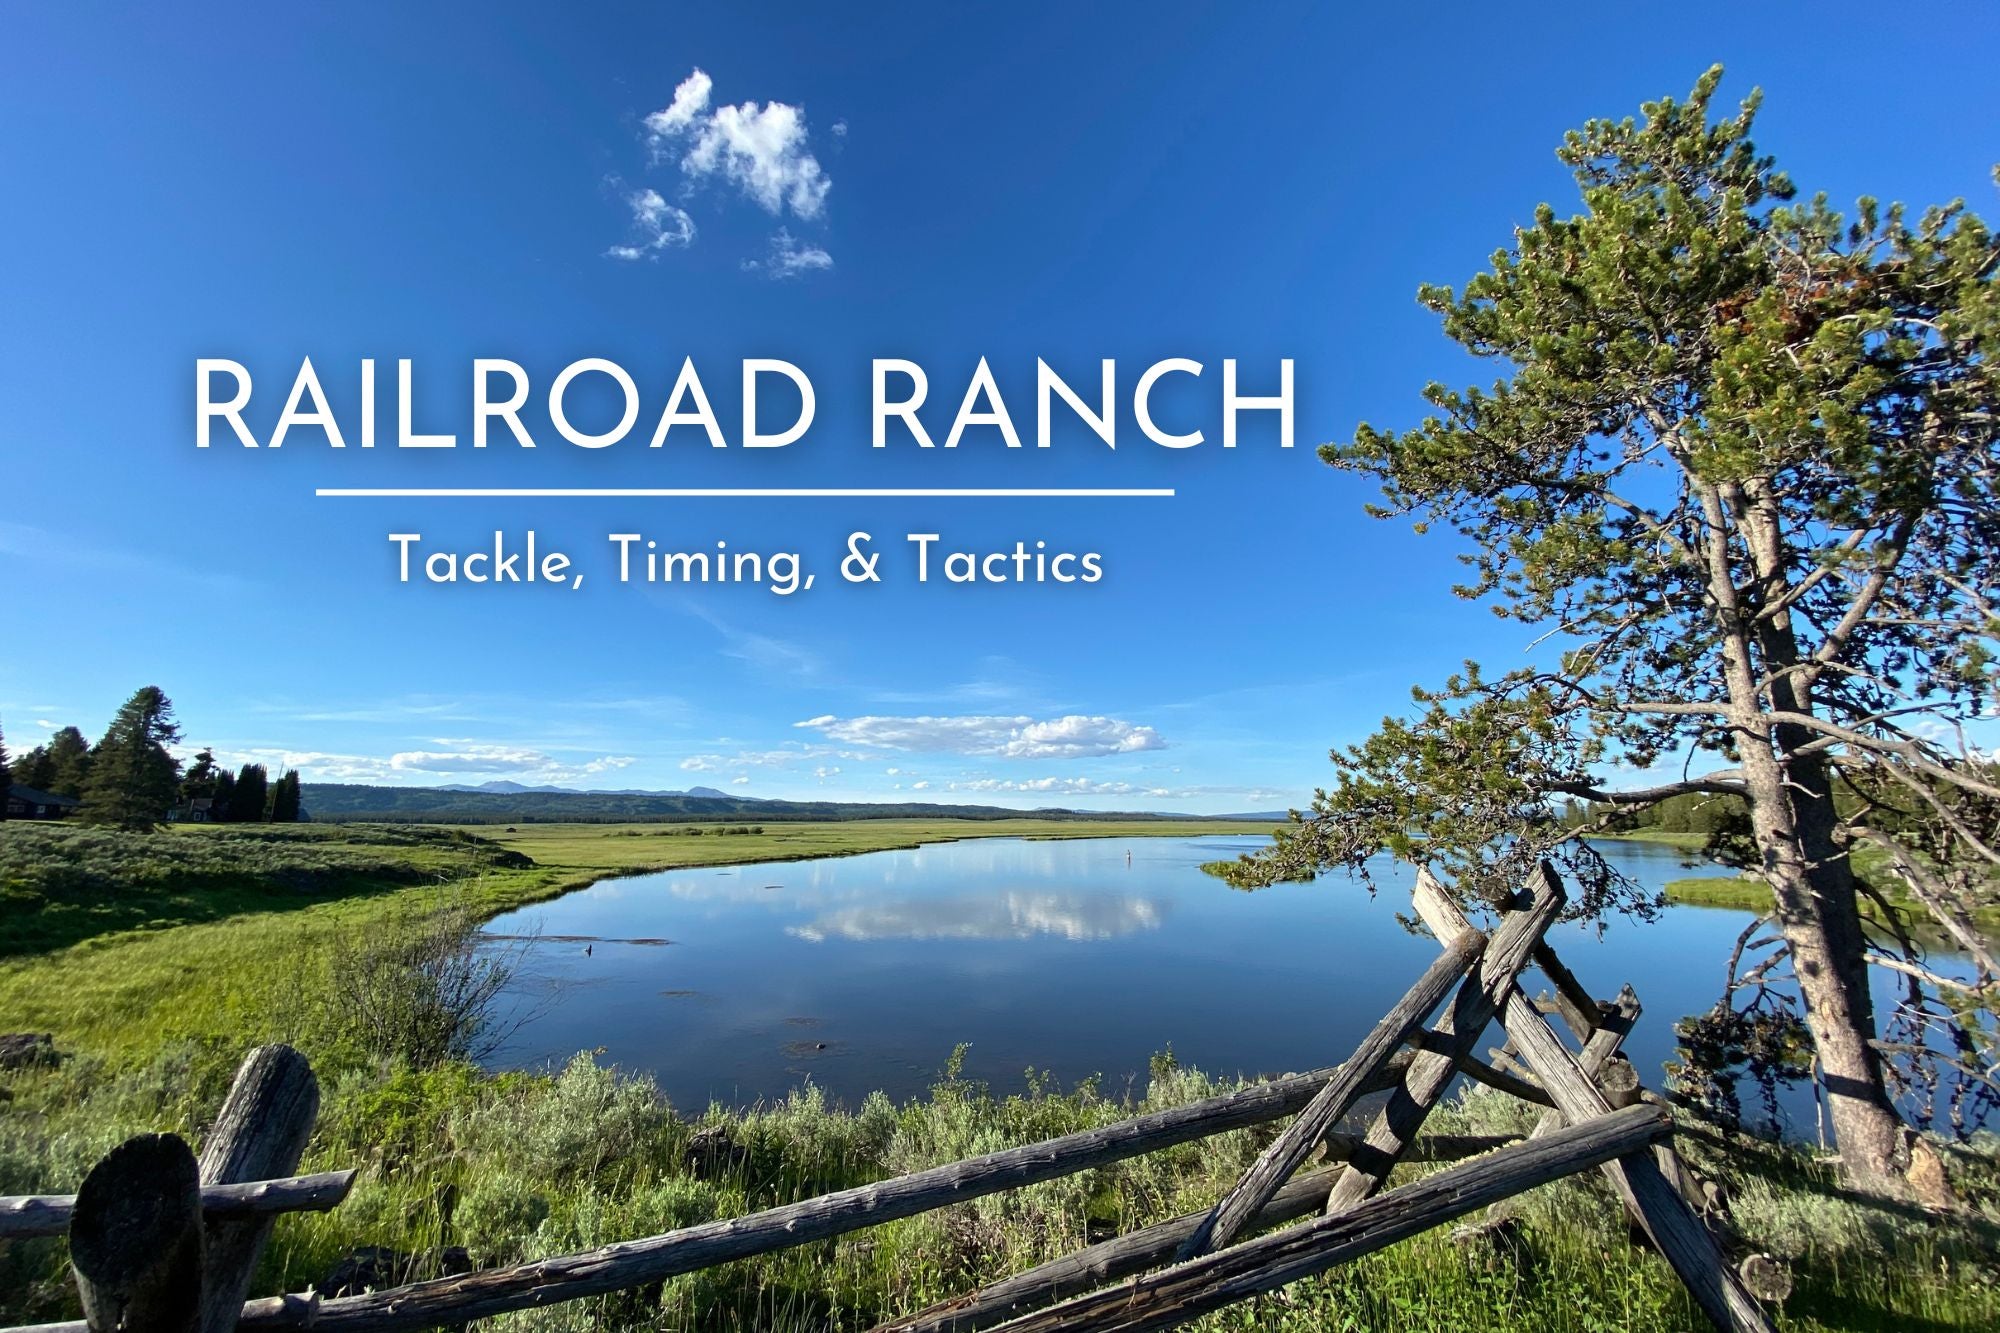 The Railroad Ranch - Tackle, Timing & Tactics.